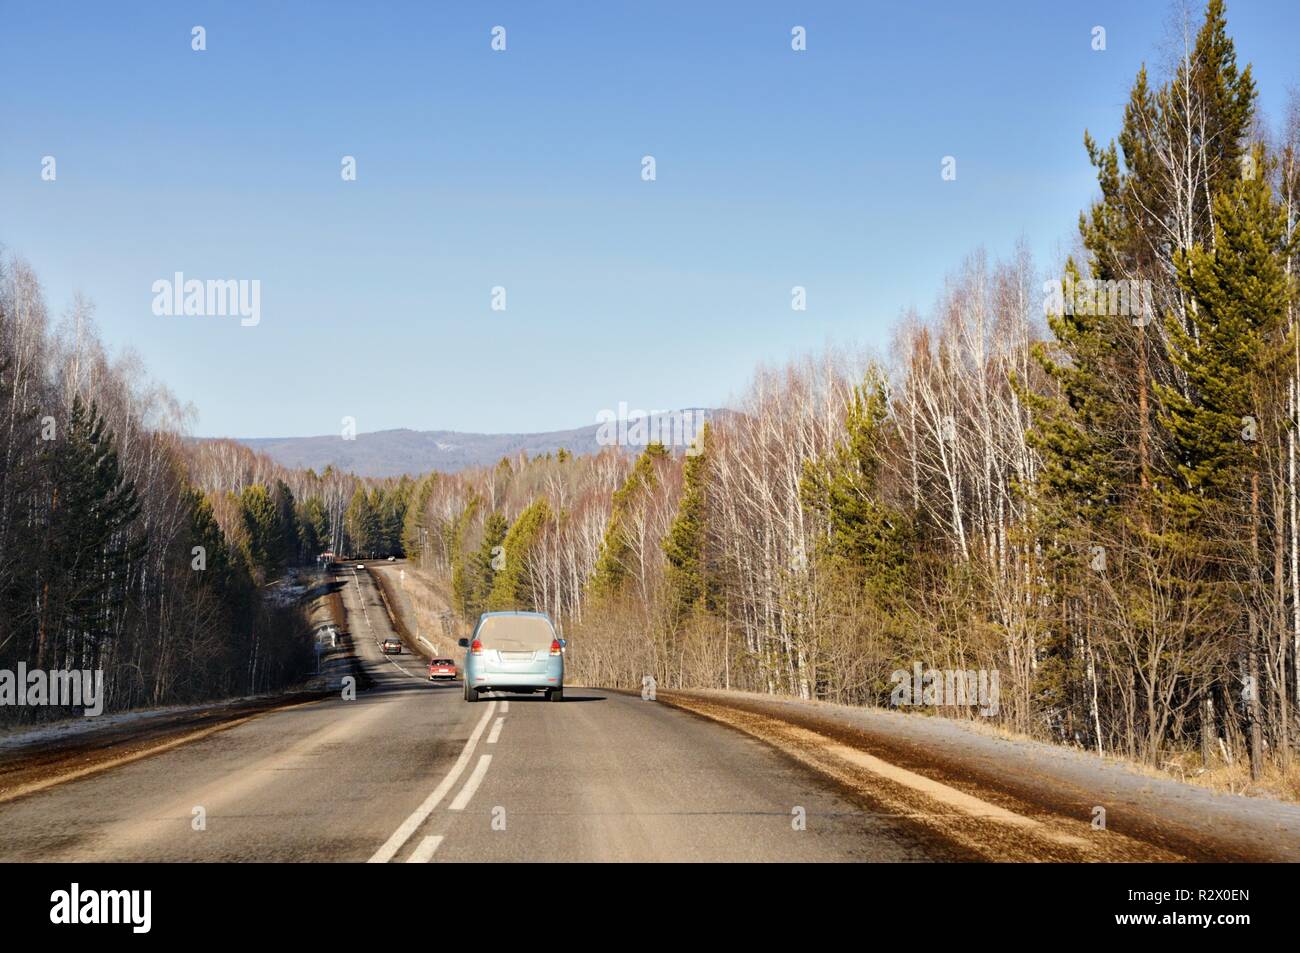 Paisaje otoñal con carretera de asfalto en las suaves colinas cubiertas de bosques de taiga bajo un cielo azul en Siberia, Rusia Foto de stock